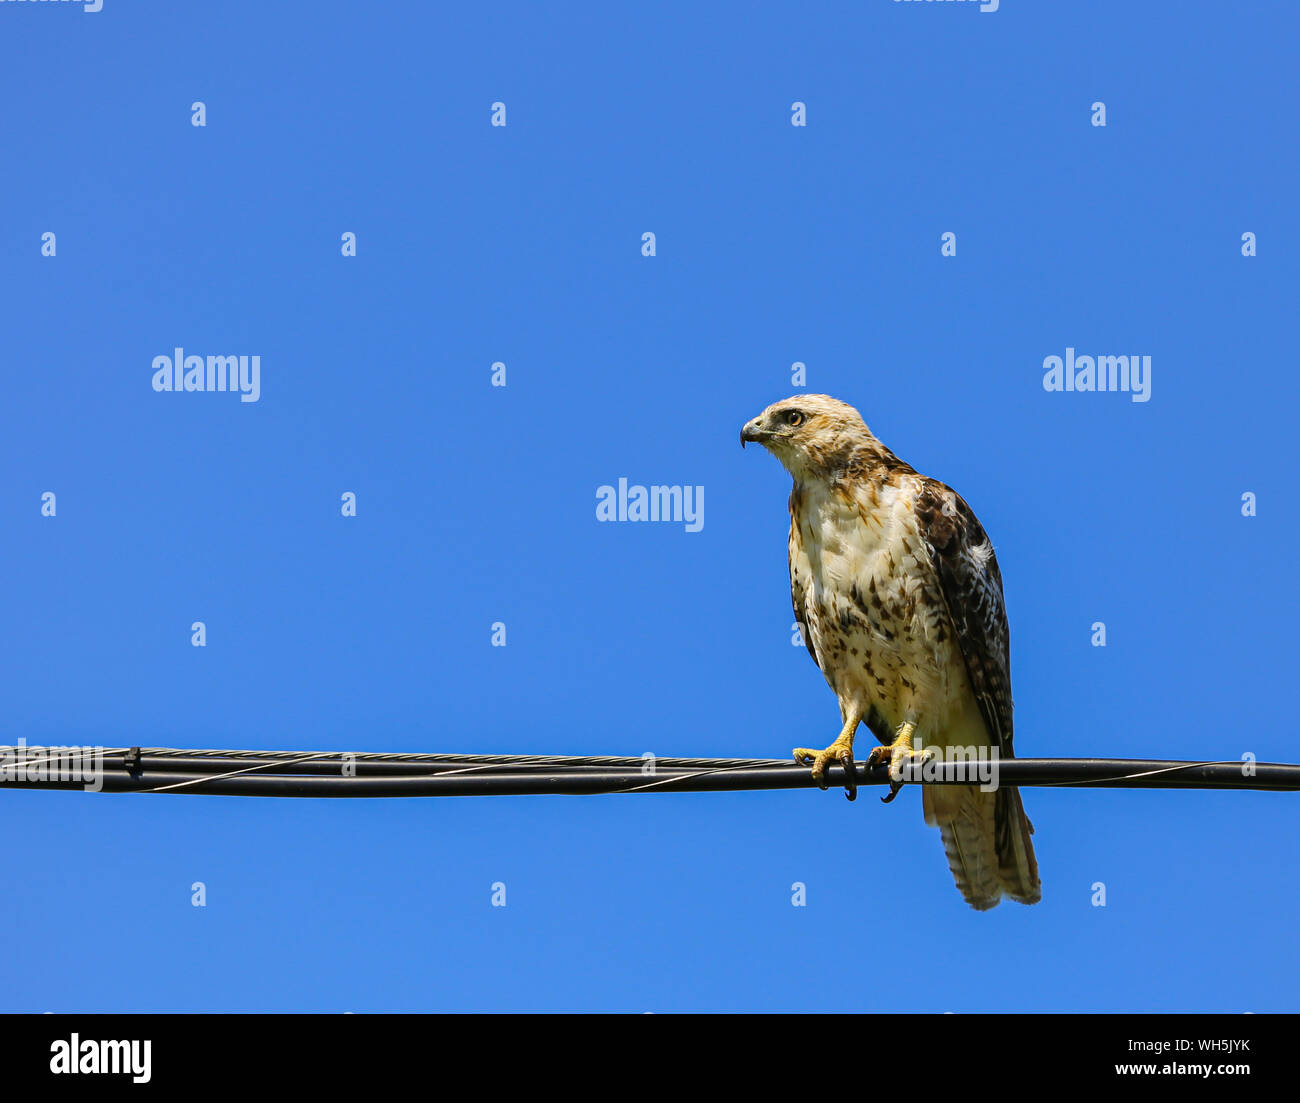 El perfil lateral de una joven Cooper's Hawk en una línea eléctrica contra un cielo azul claro. Foto de stock